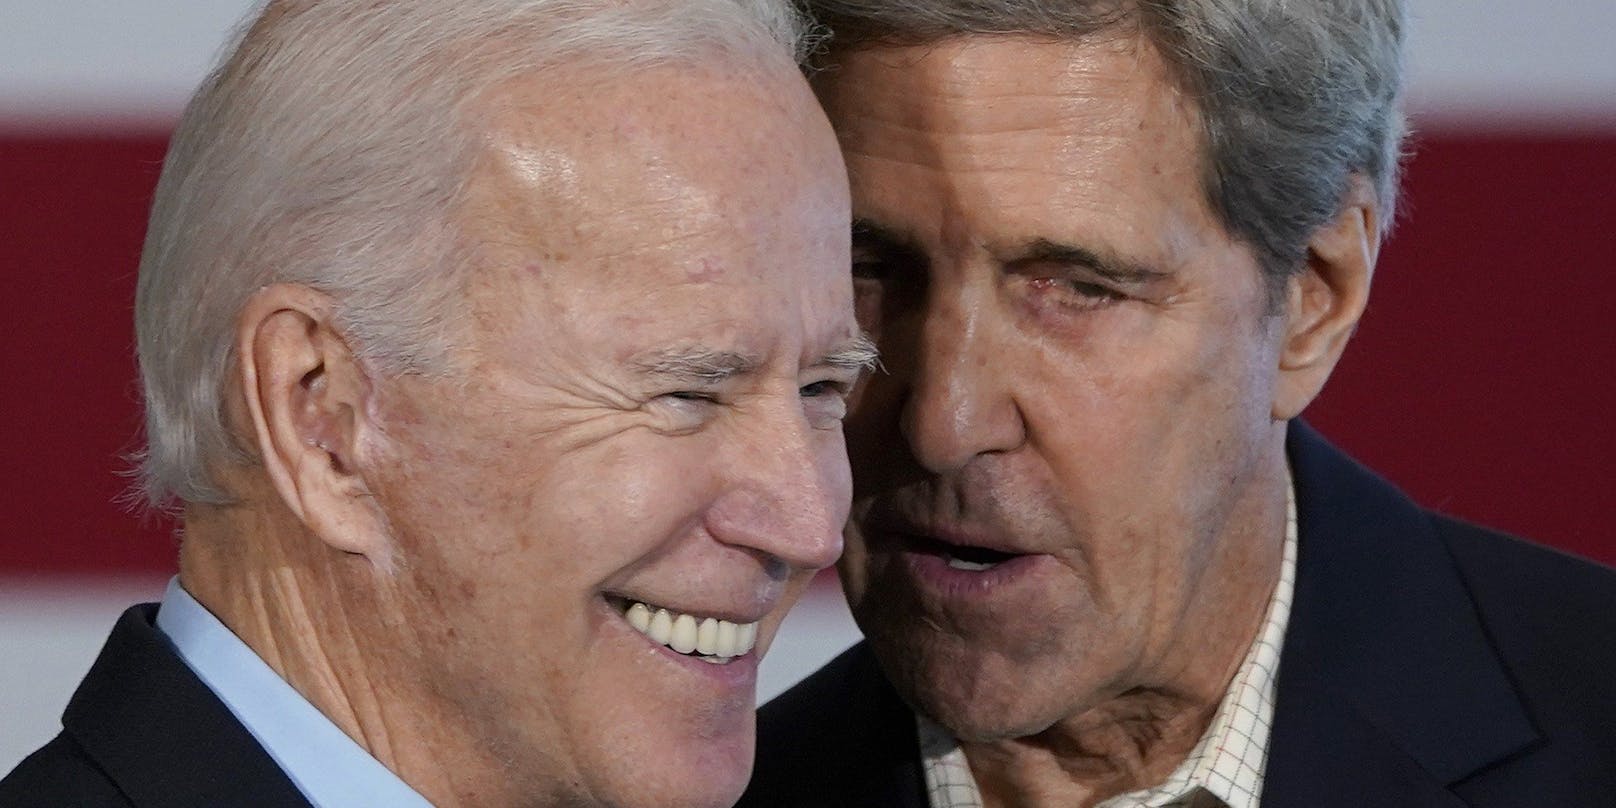 Der gewählte US-Präsident Joe Biden holt den ehemaligen US-Außenminister John Kerry in sein Team